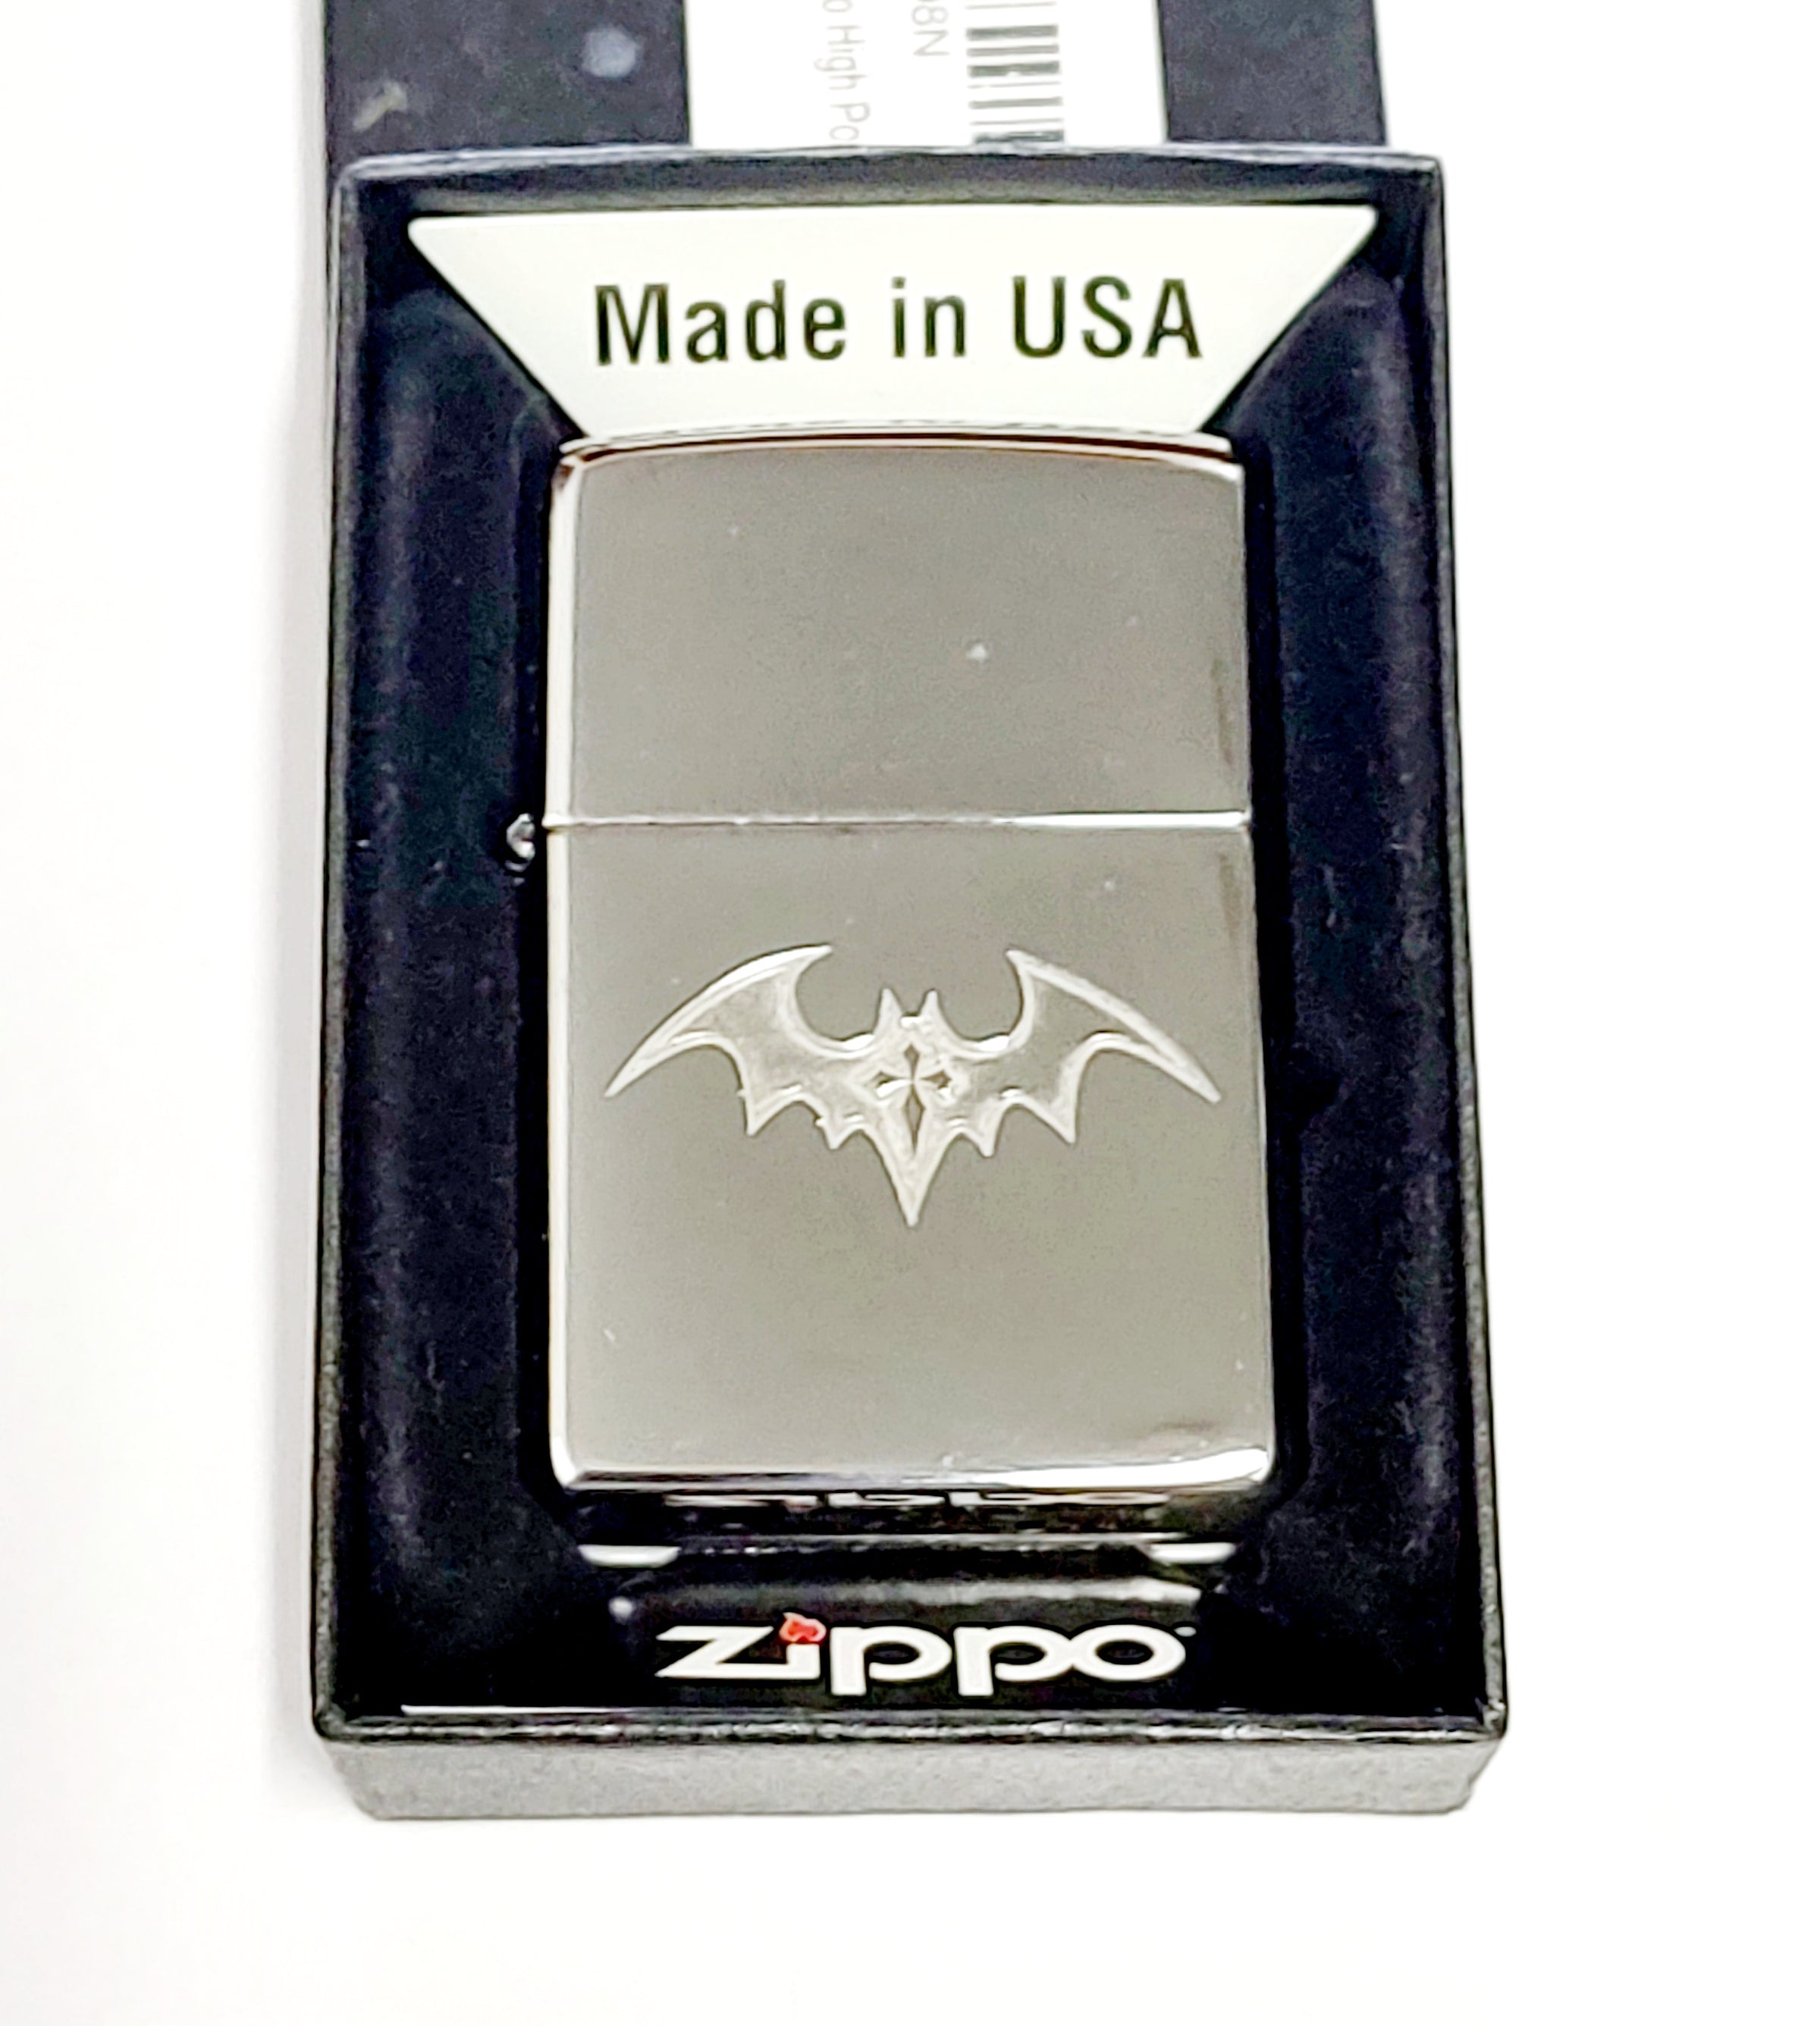 2016 Dark BAT with Gothic Cross Custom Tattoo Zippo Lighter Rare - Hers and His Treasures